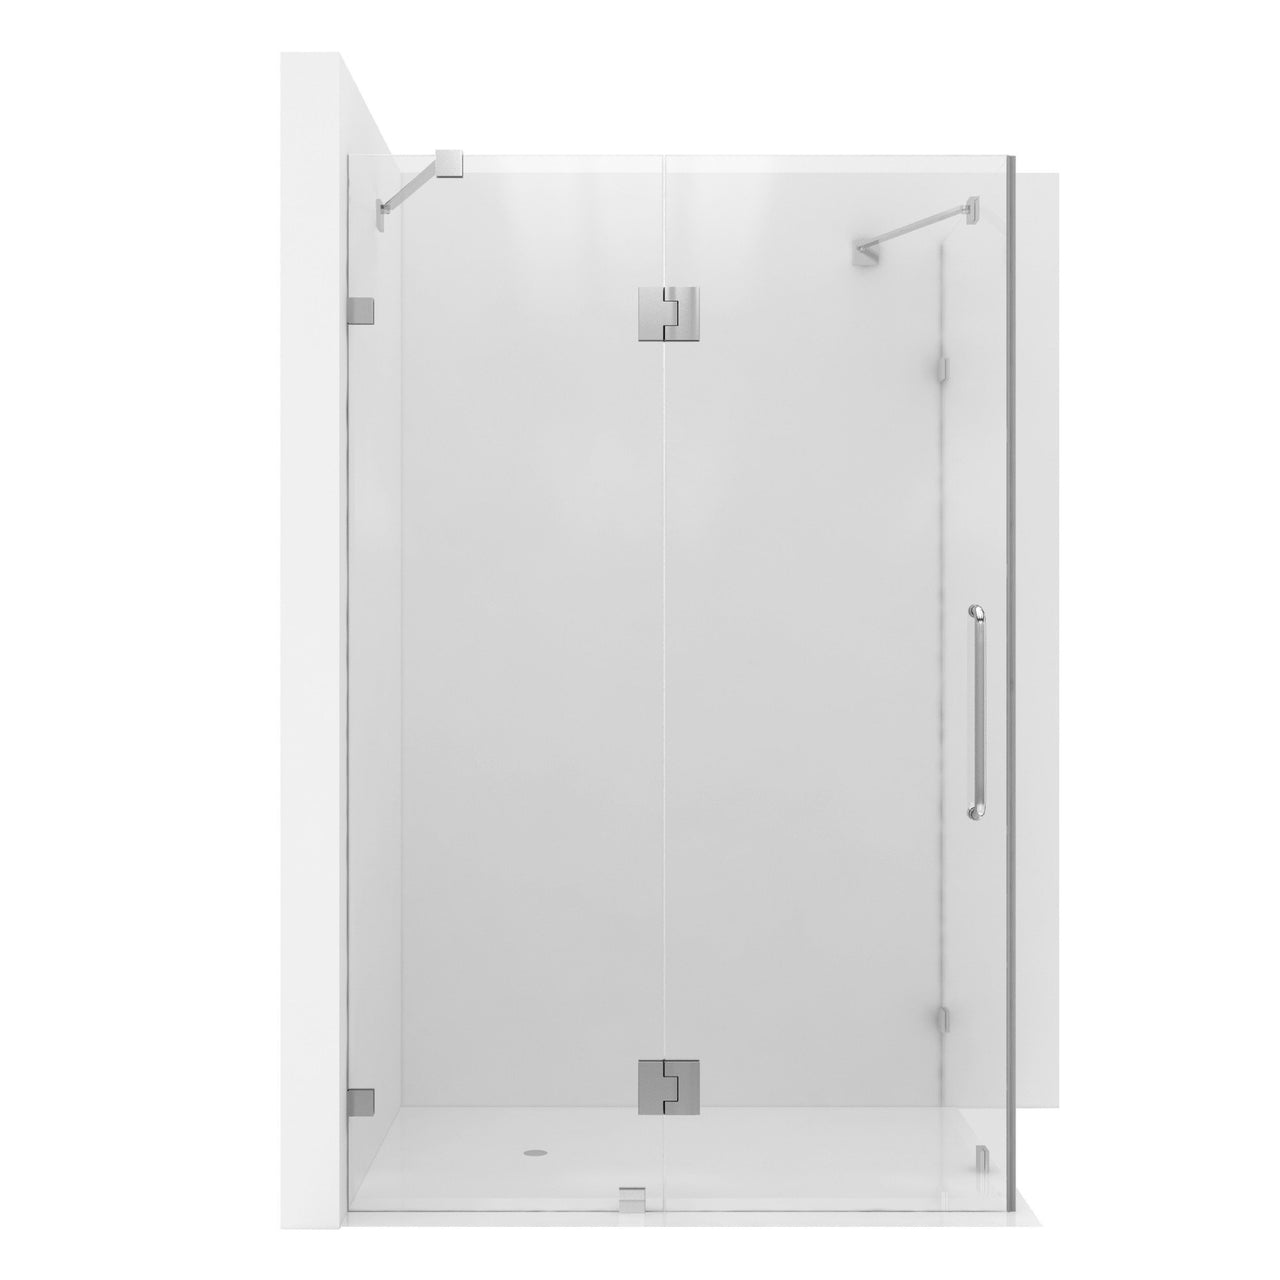 ANZZI Archon Series SD-AZ03-01CH Shower Doors Shower Doors ANZZI 